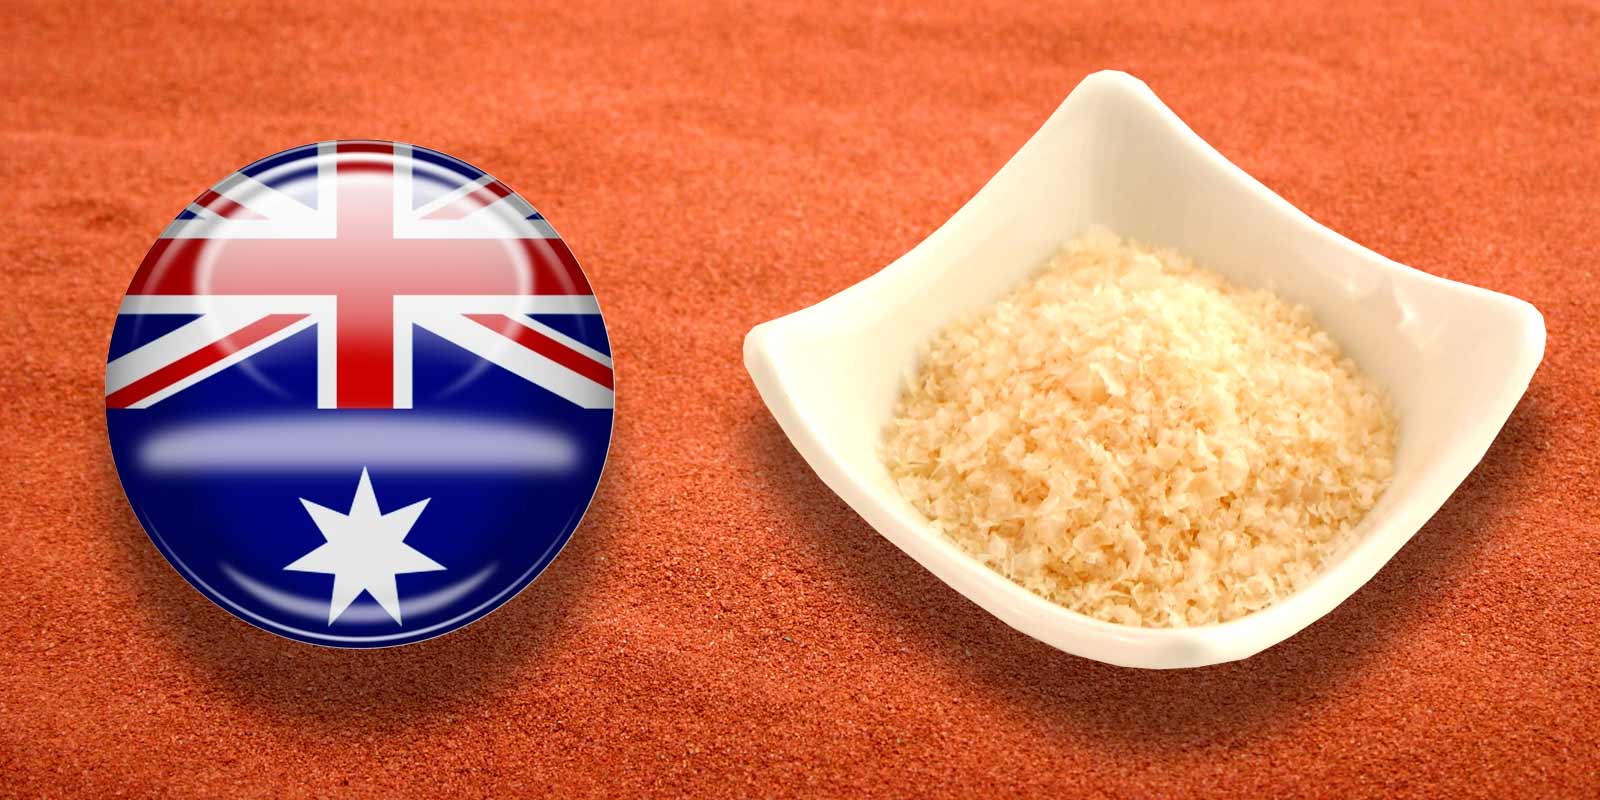 Murray River zout uit Australië Australisch Murray River-zout bestaat uit subtiele, perzikkleurige kristallen.
 De vlokken hebben een milde smaak en zijn ideaal om te kruiden of als keukenzout. Ze smelten letterlijk tussen je vingers.